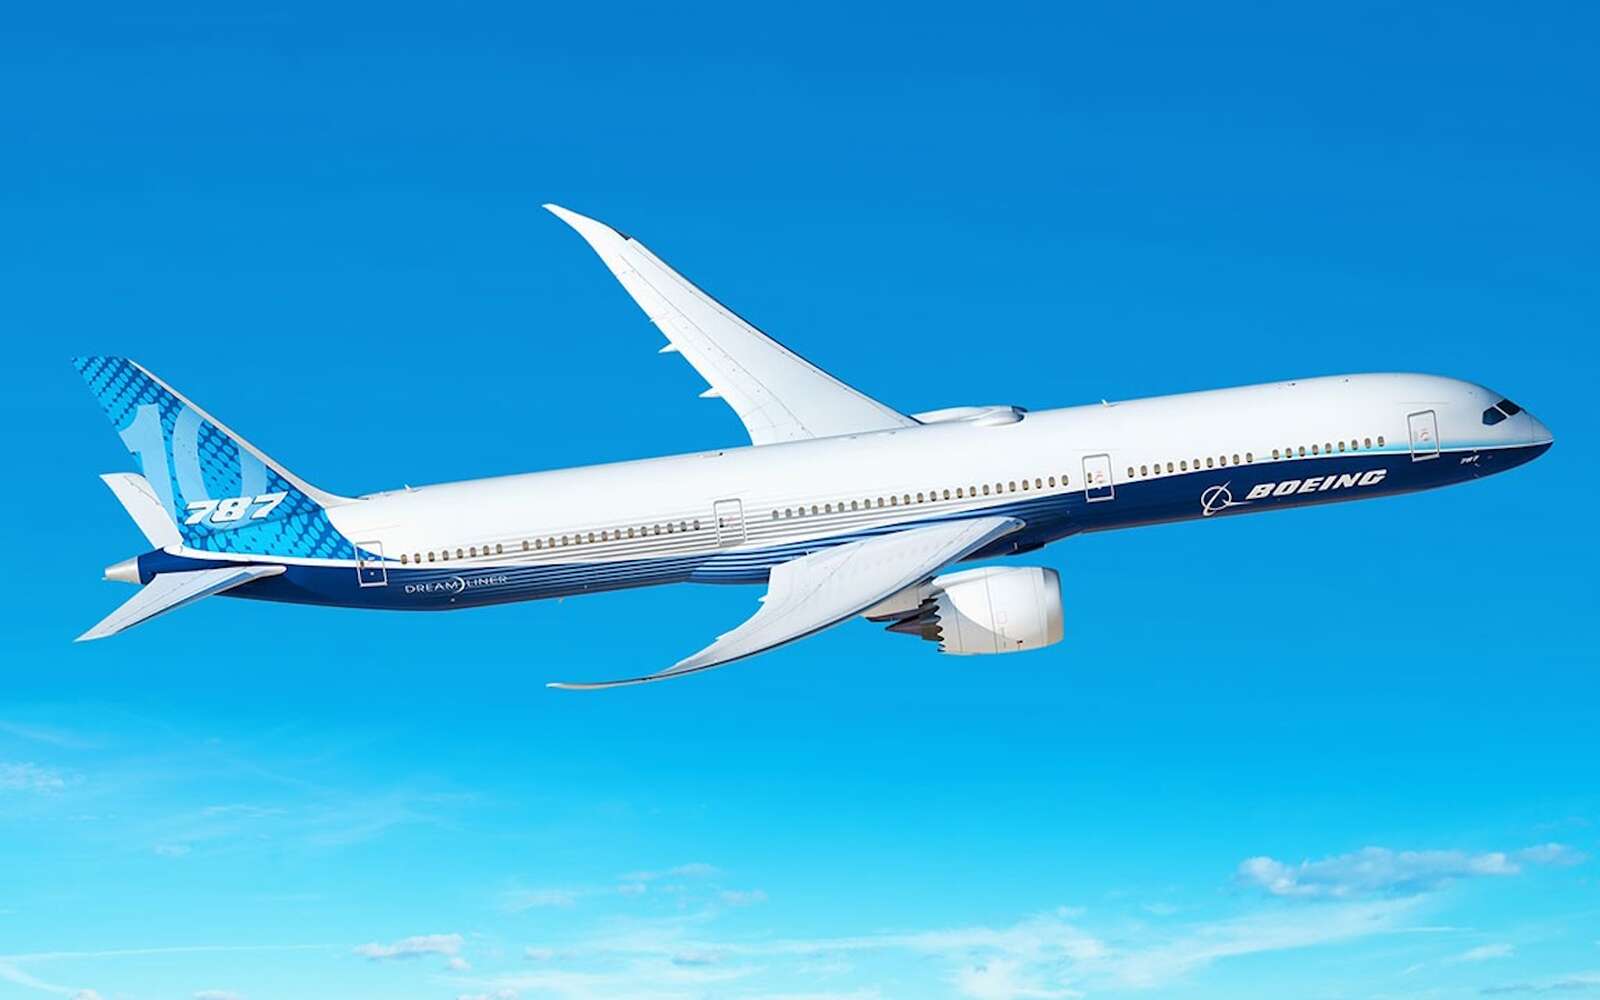 Les Boeing 787 Dreamliner seraient dangereux car mal assemblés révèle un lanceur d'alerte